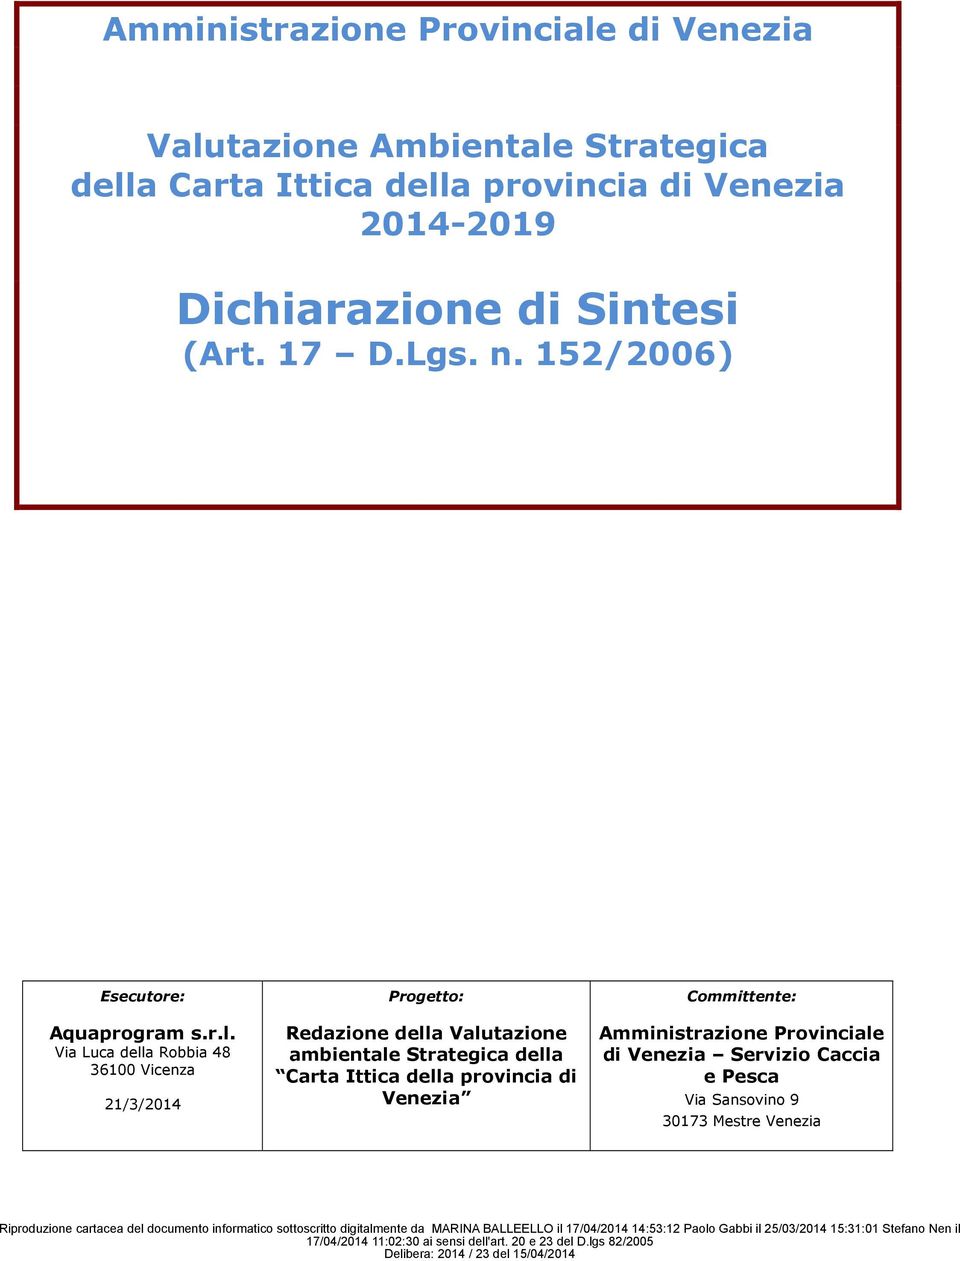 Via Luca della Robbia 48 3600 Vicenza 2/3/204 Progetto: Redazione della Valutazione ambientale Strategica della Carta